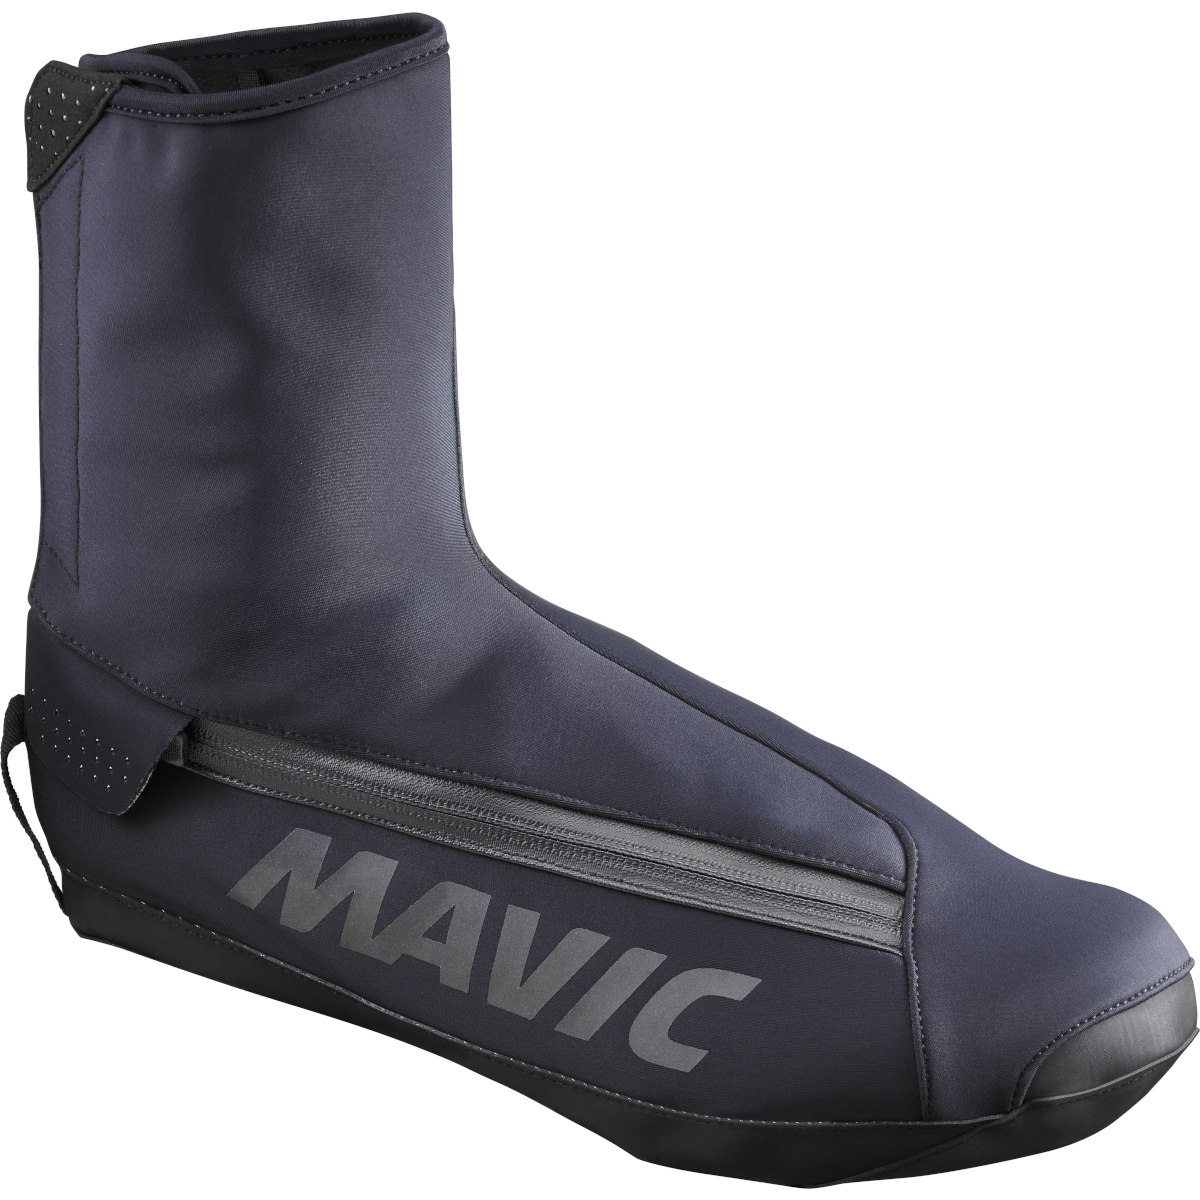 Immagine prodotto da Mavic Essential Thermo Road Shoe Cover - black